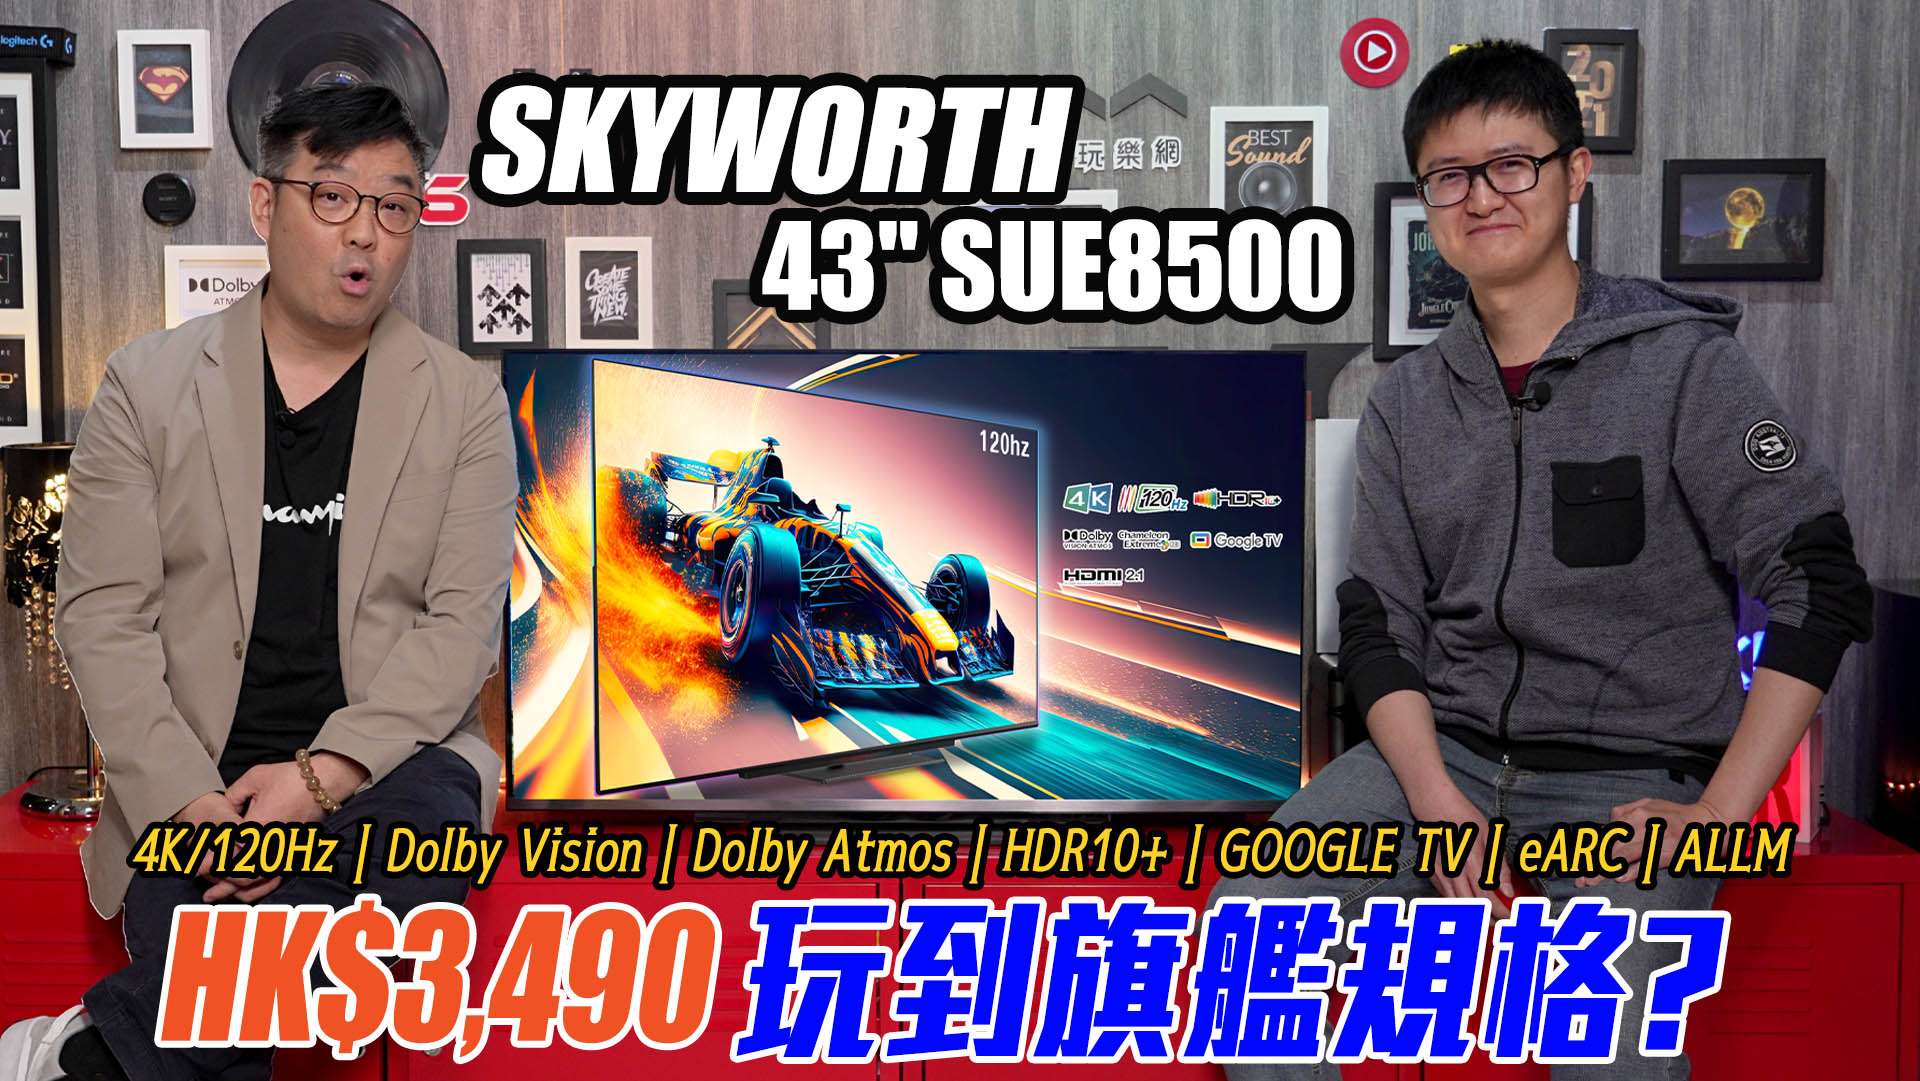 Skyworth SUE8500 TV review forum copy.jpg